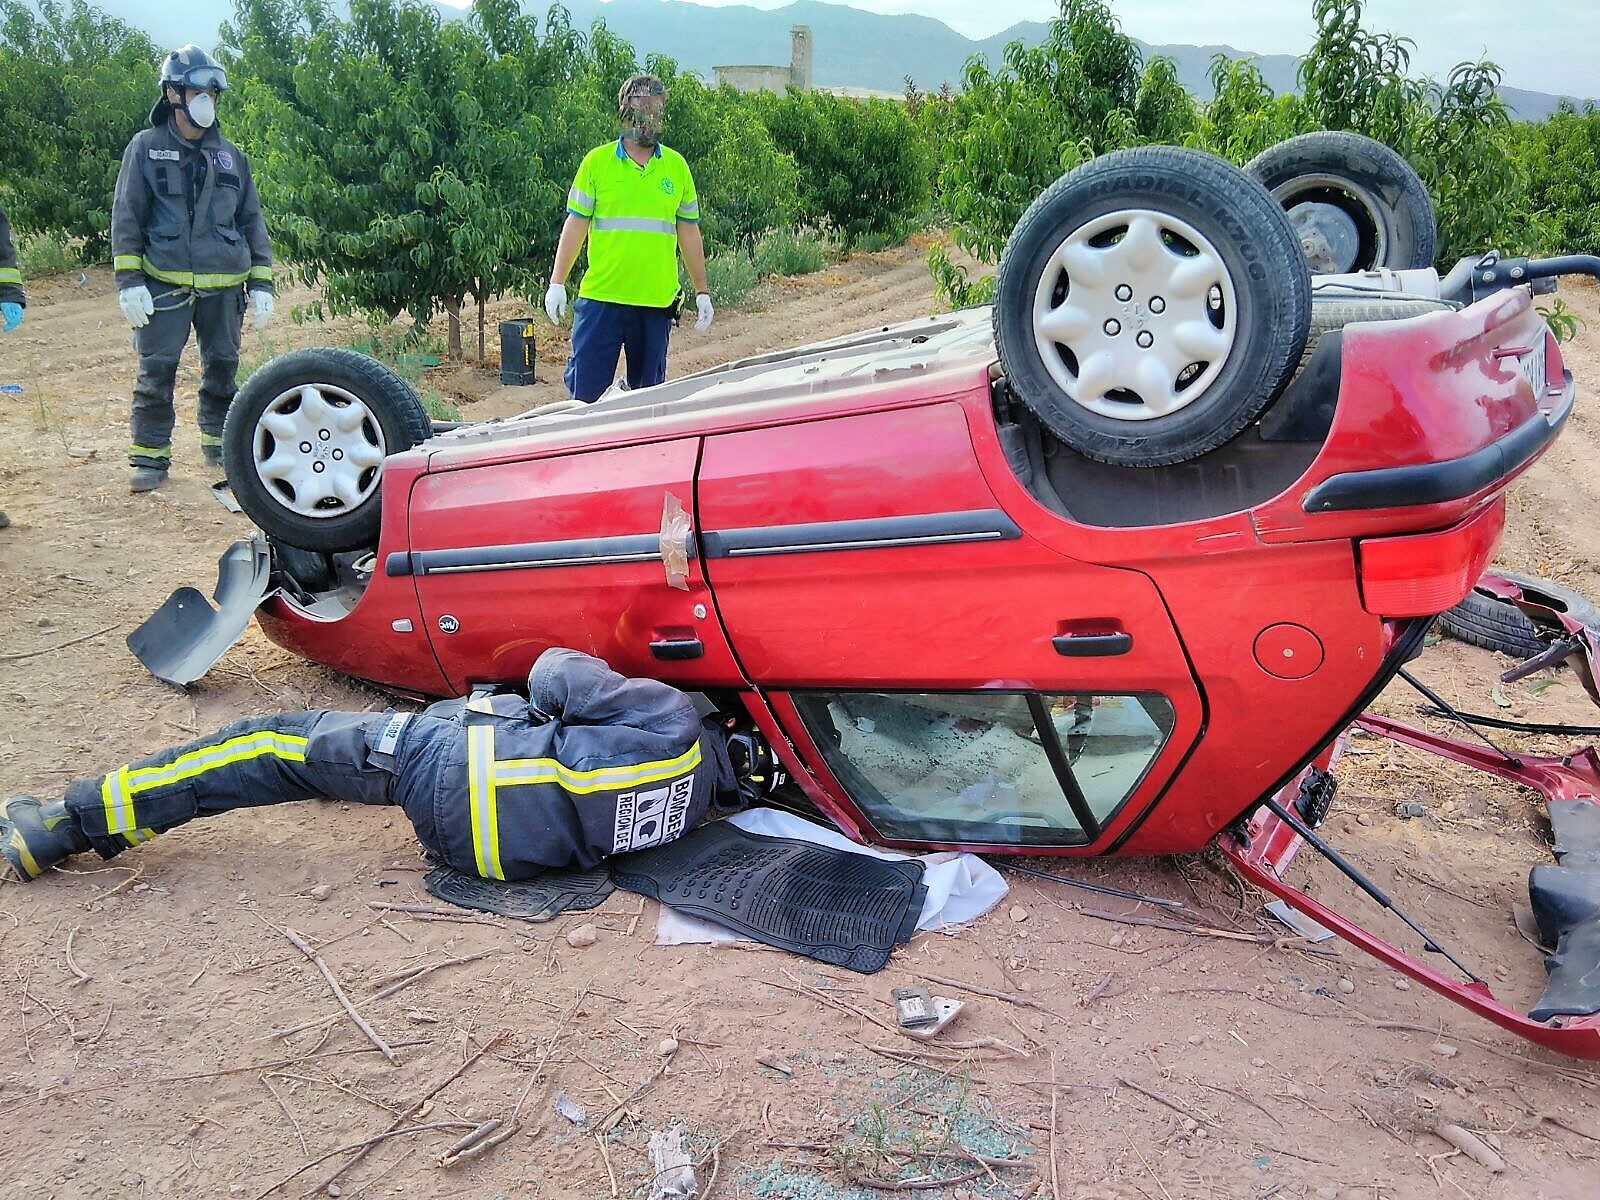 Un joven de 23 años vecino de Jumilla fallece en un accidente de tráfico en la carretera de Cieza al chocar su turismo con un camión en el término municipal de Jumilla